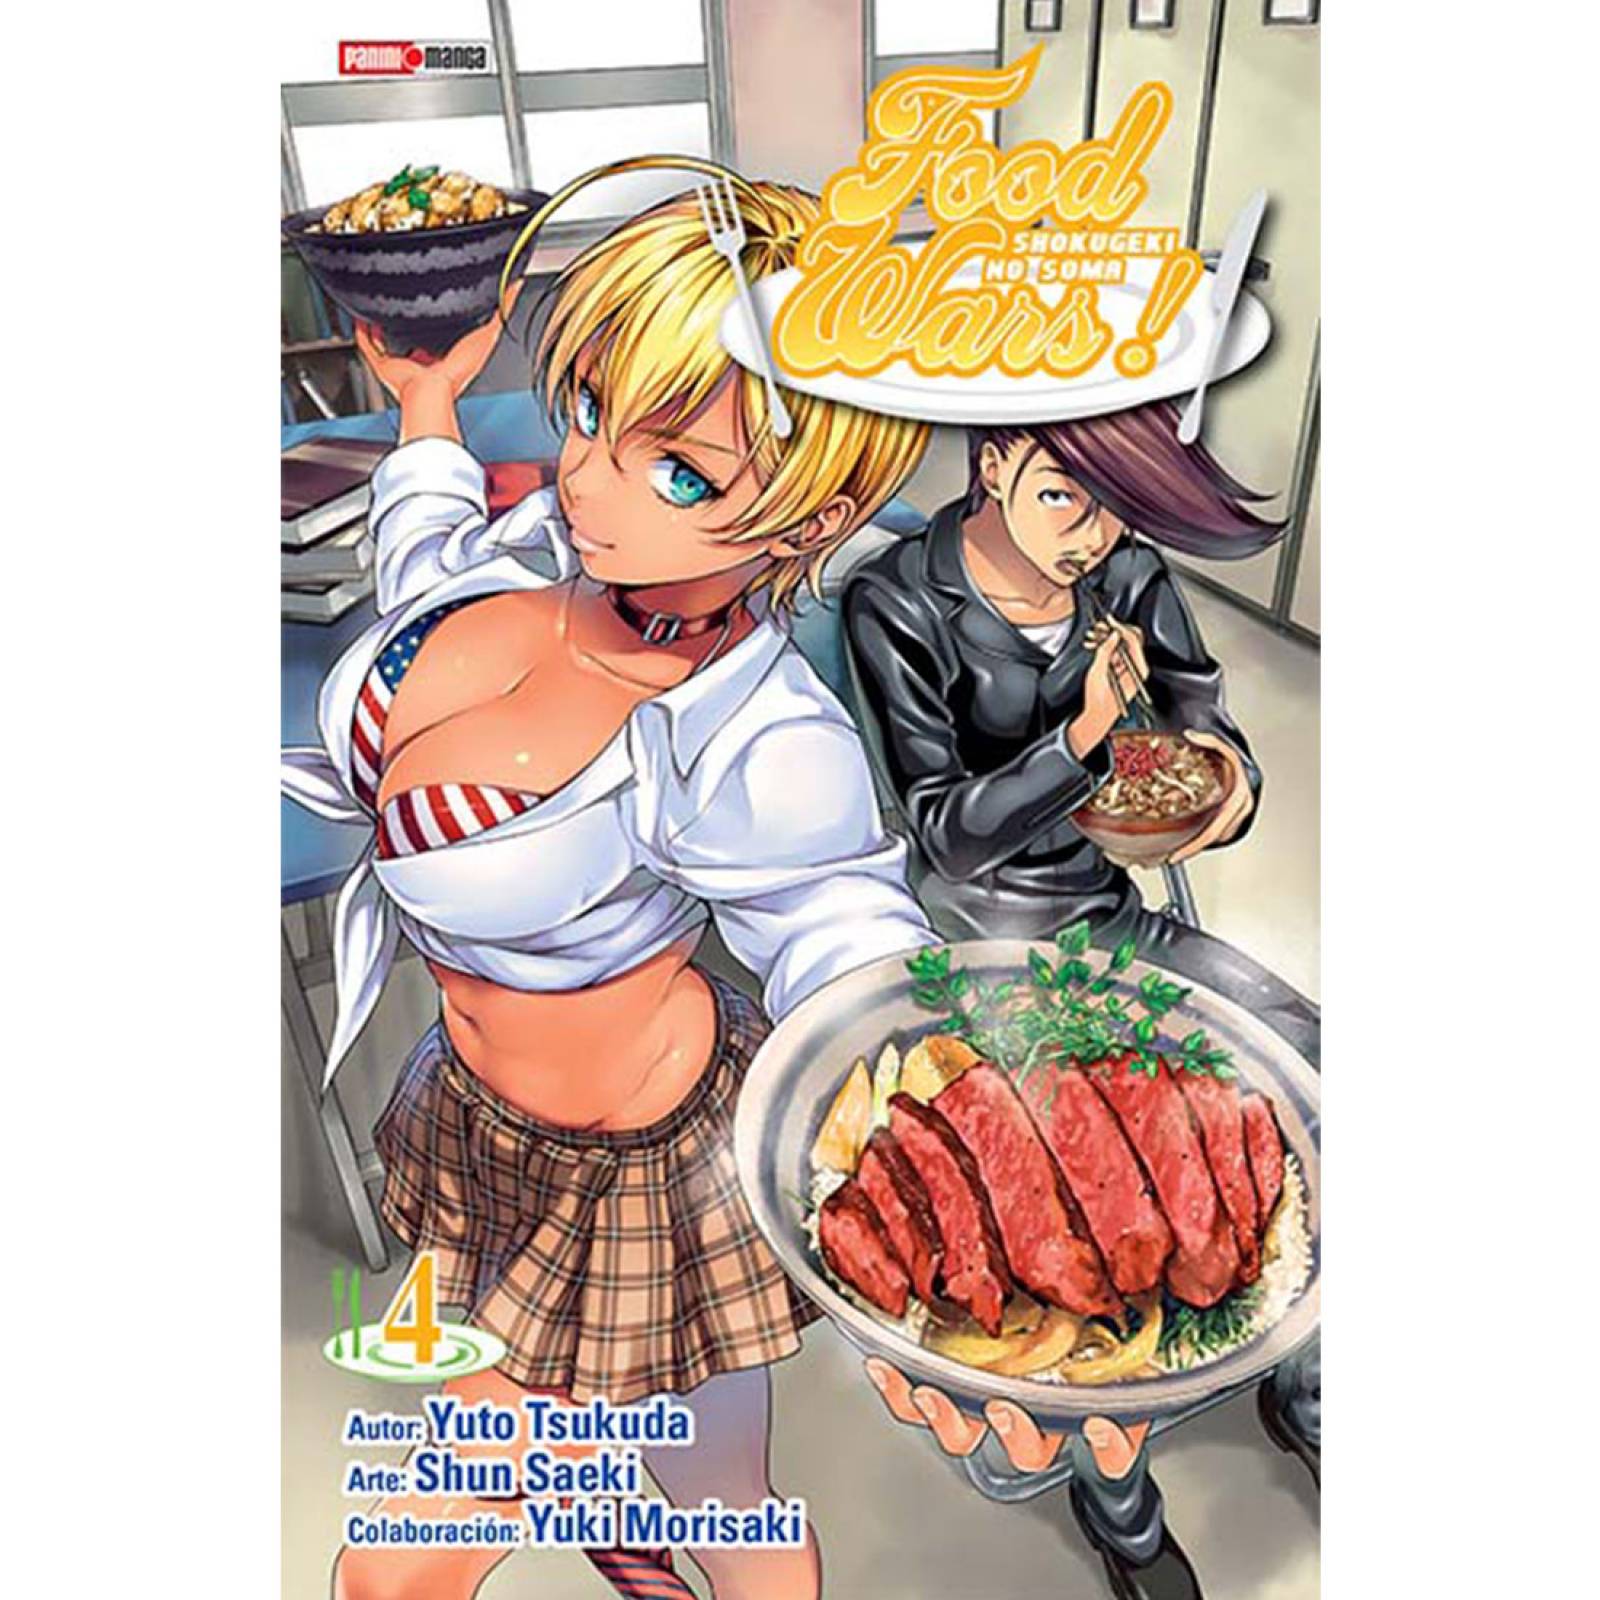 Panini Manga Food Wars - Shokugeki No Souma Yuto Tsukuda